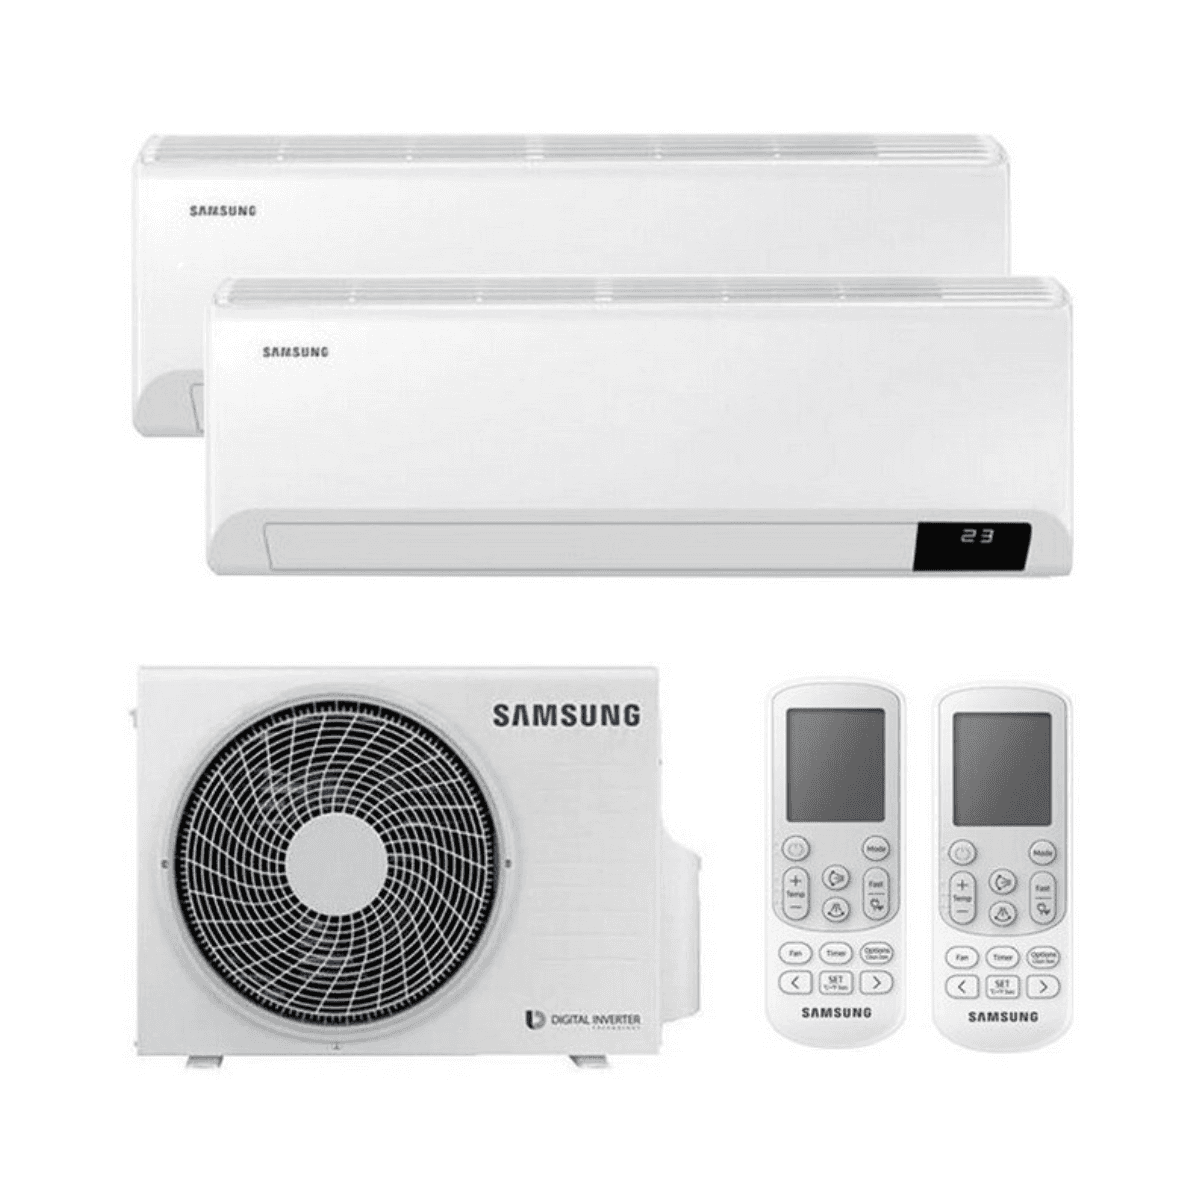 Multisplit-Klimaanlage 2x1 Samsung Wind Free Comfort 2,5 kW 9000 BTU + 2,5 kW 9000 BTU mit der Referenz KITSAMWINDFREE09+09 von der Marke SAMSUNG